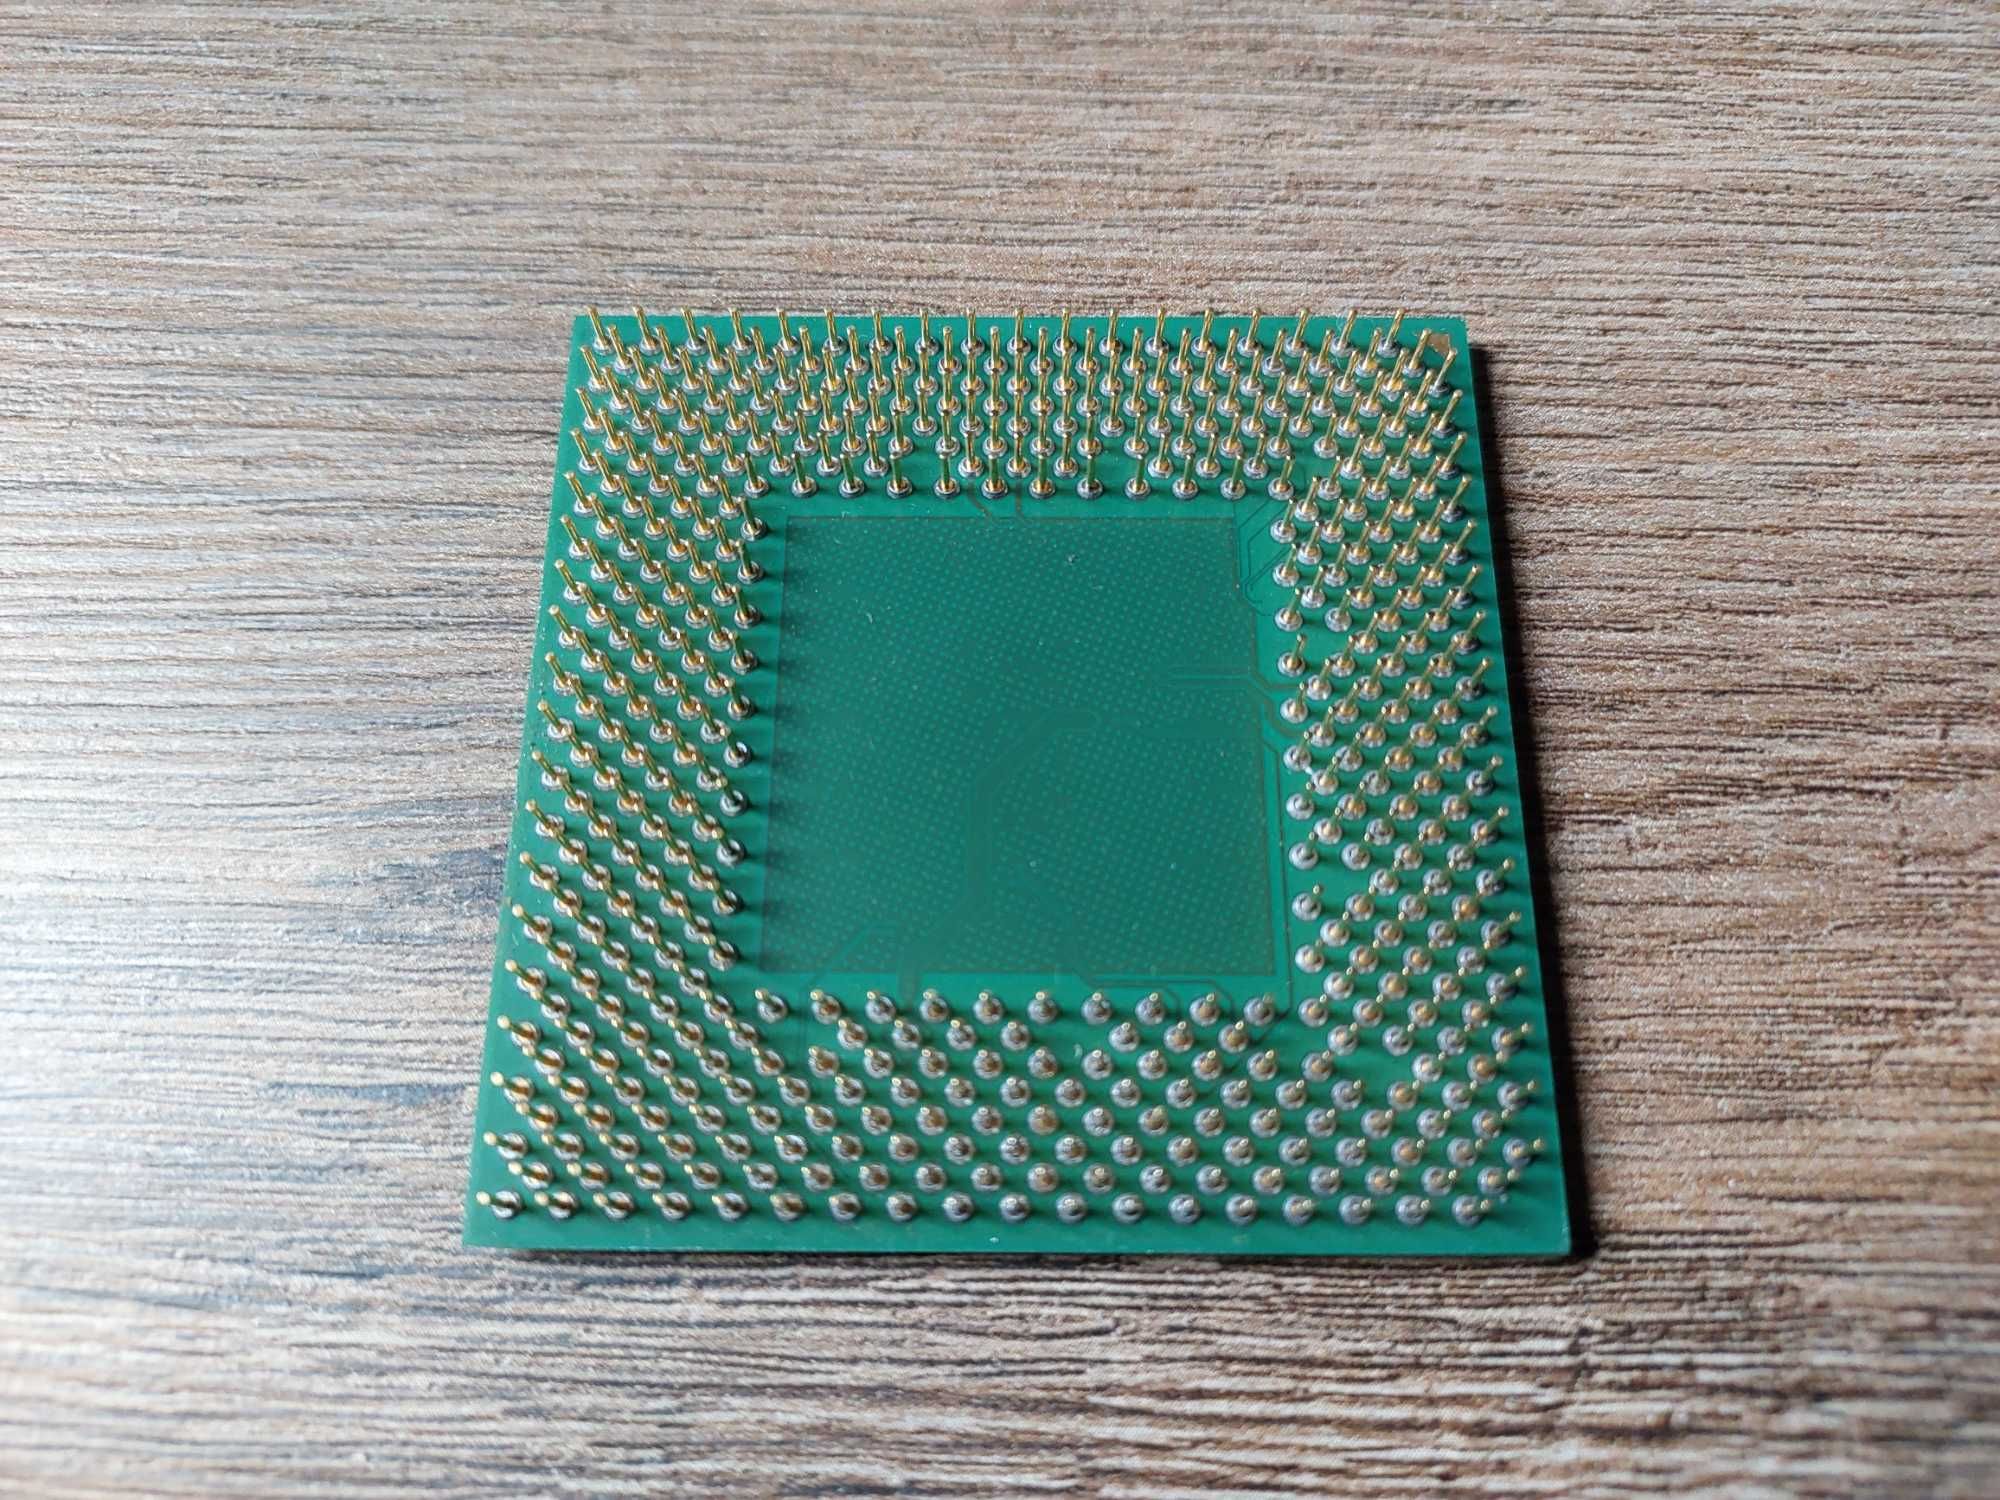 AMD Athlon AXDA2400KV3C i RAM DDR 512MB x2